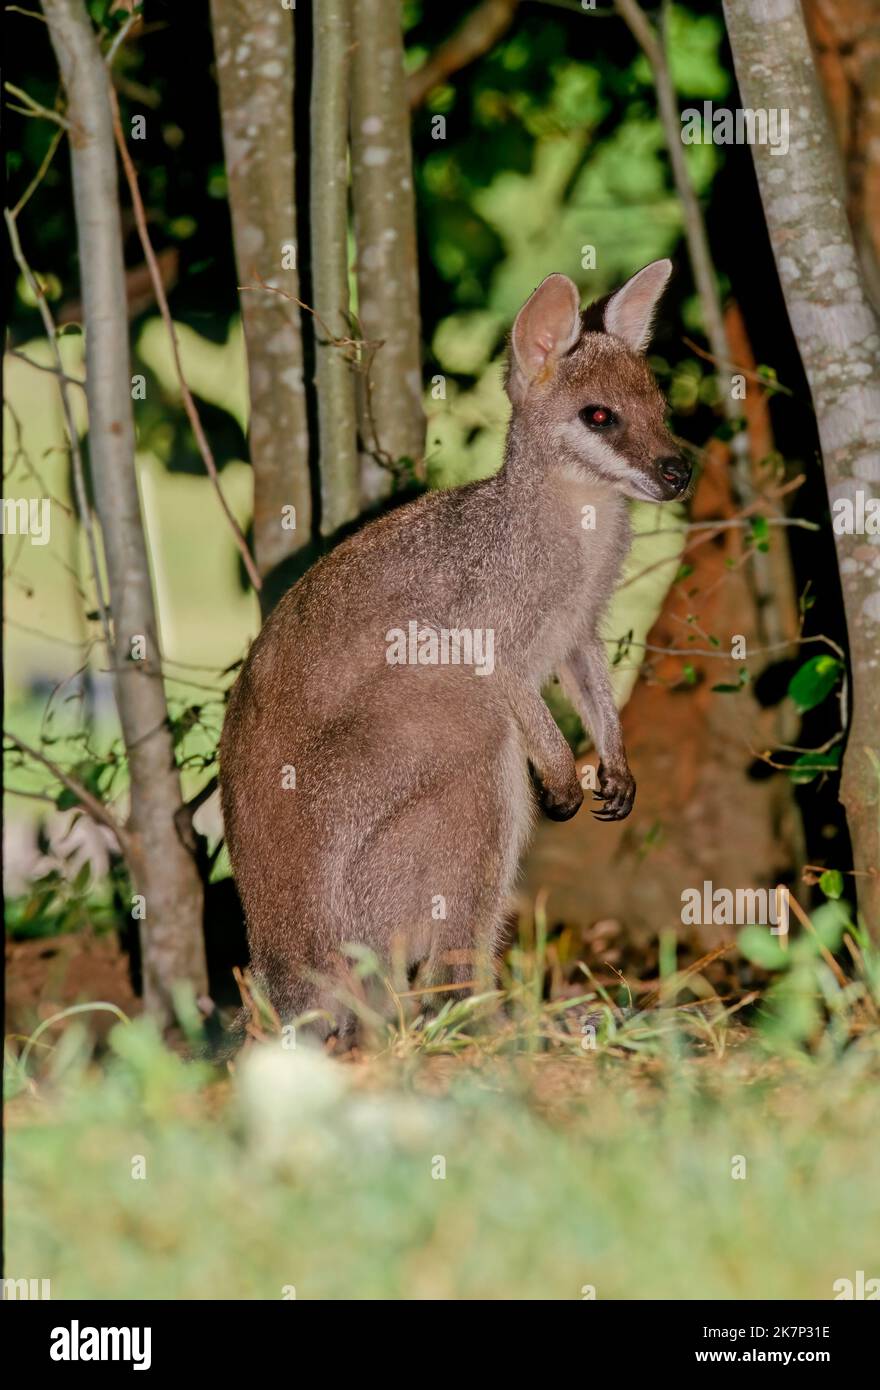 Le wallaby à queue blanche (Notamacropus parryi), également connu sous le nom de wallaby au joli bout, est une espèce de wallaby trouvée dans l'est de l'Australie. Banque D'Images